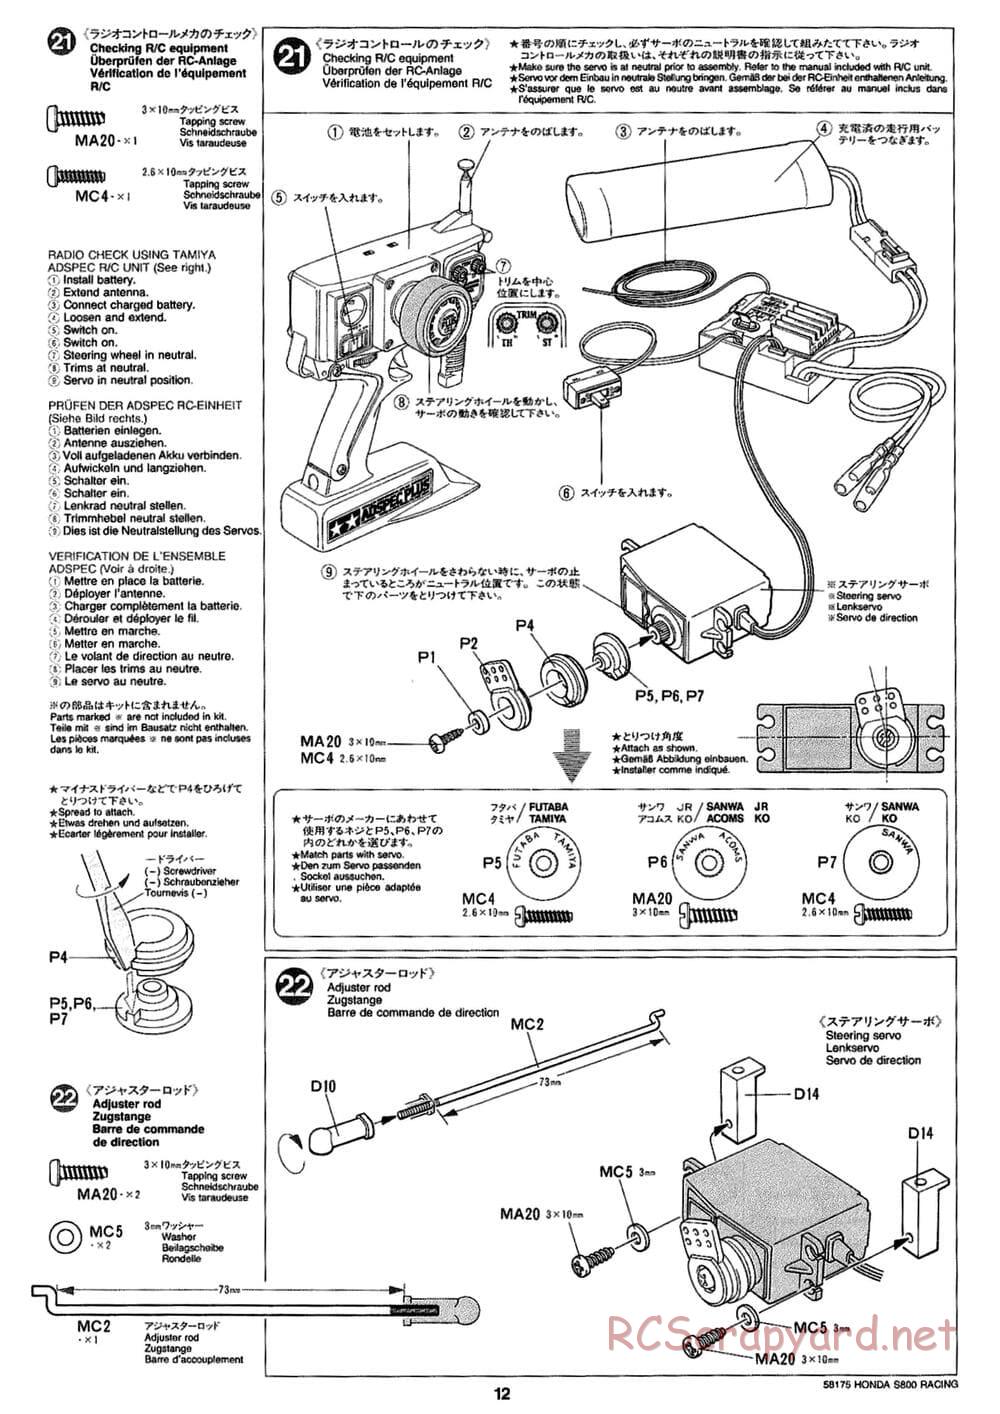 Tamiya - Honda S800 Racing - M02 Chassis - Manual - Page 12